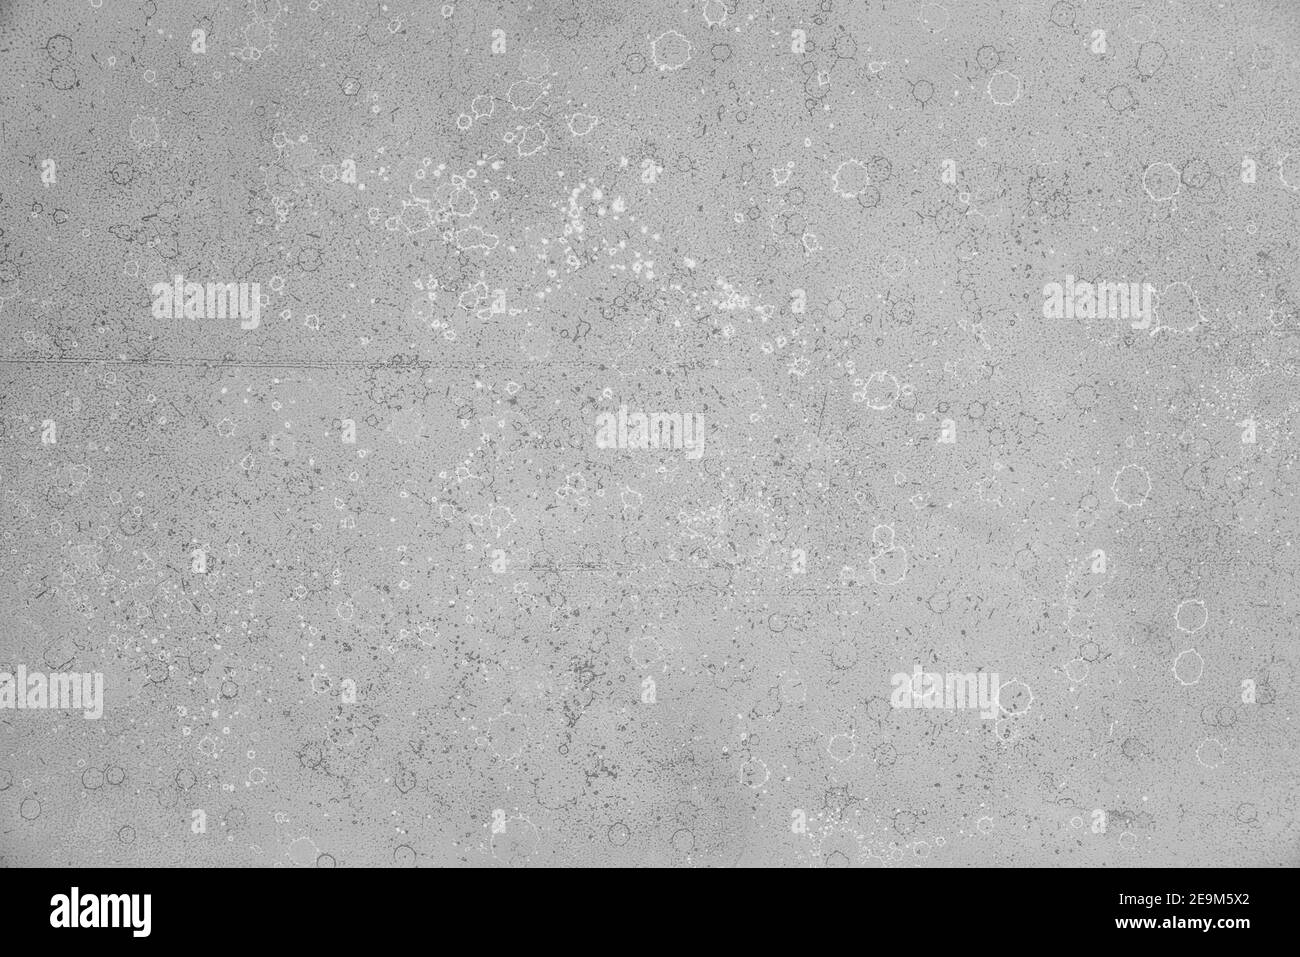 Graue lockere Acrylfarbe Textur mit weißen und dunklen Flecken. Hintergrund, Substrat. Stockfoto